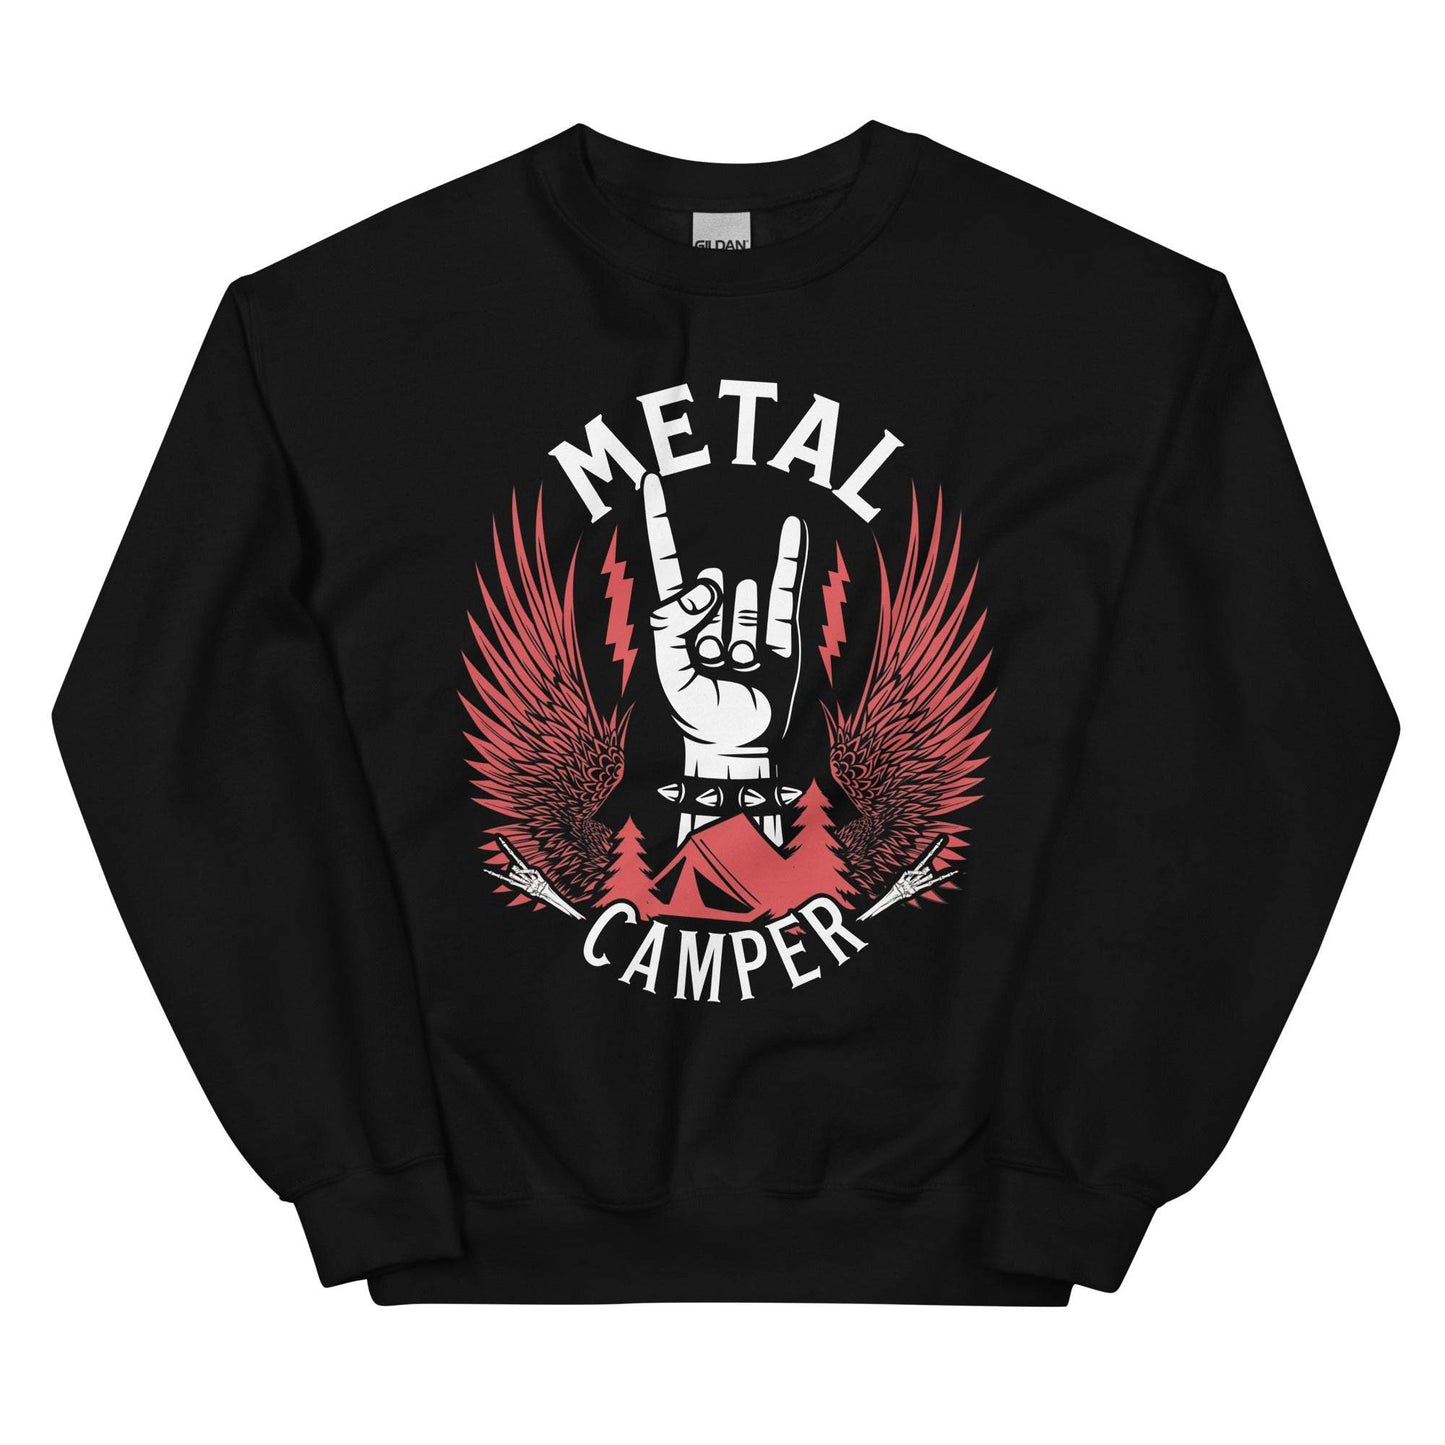 Metal Camper - Unisex Sweatshirt Premium Pullover Farbe